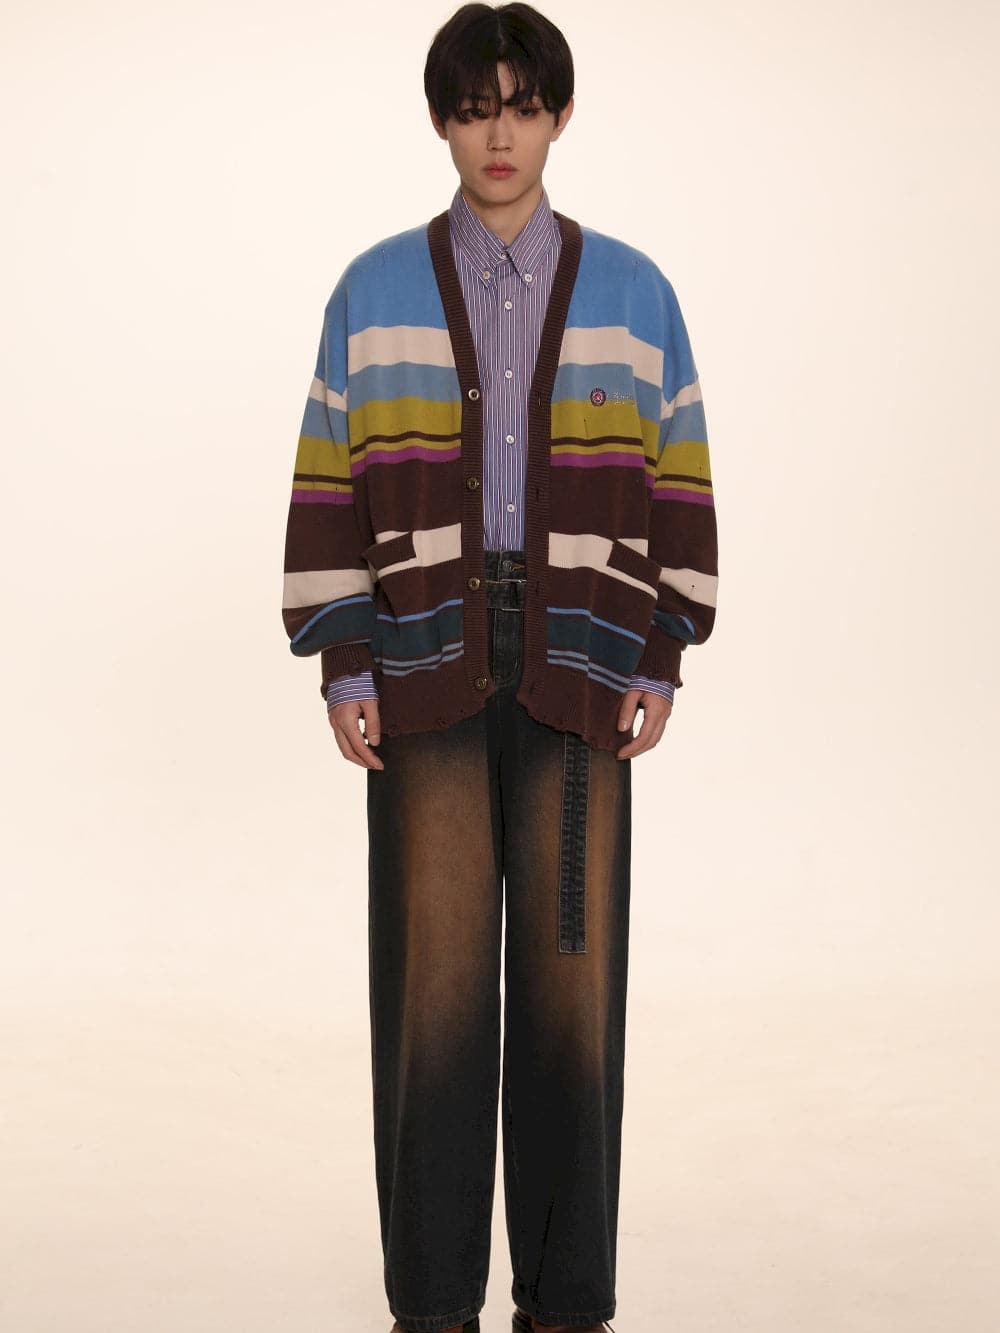 Oversize Unisex Colorful Knit Cardigan With Damage Border - chiclara